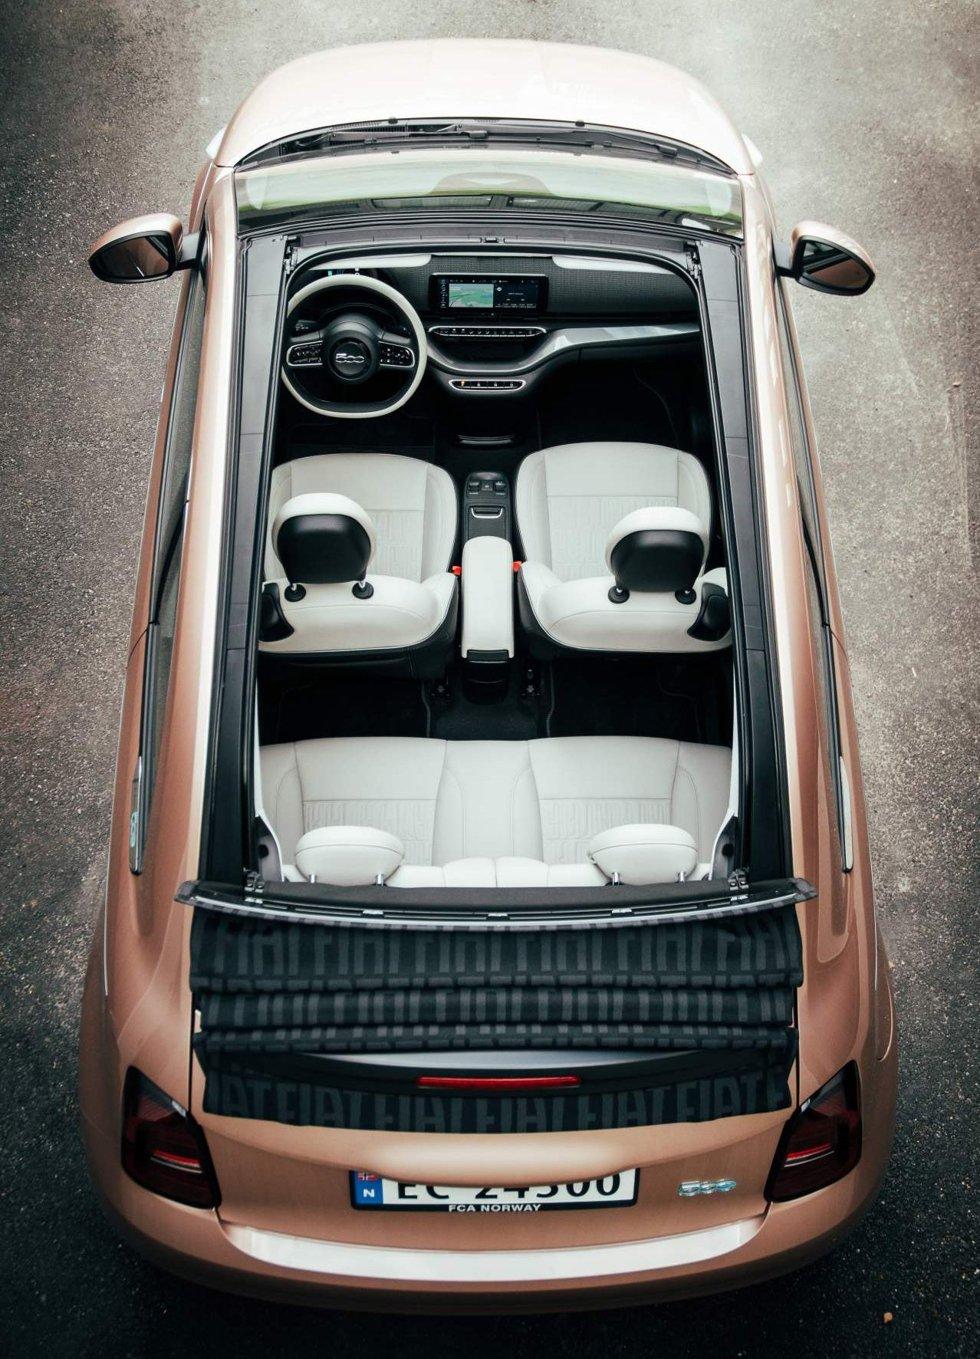 Trucchi: la Fiat 500E Cabriolet ha solo un tettuccio apribile gigante, ma ogni passeggero riceve la sua dose di sole, vento e odore.  Foto: Andreas Scheele / Finansavisen